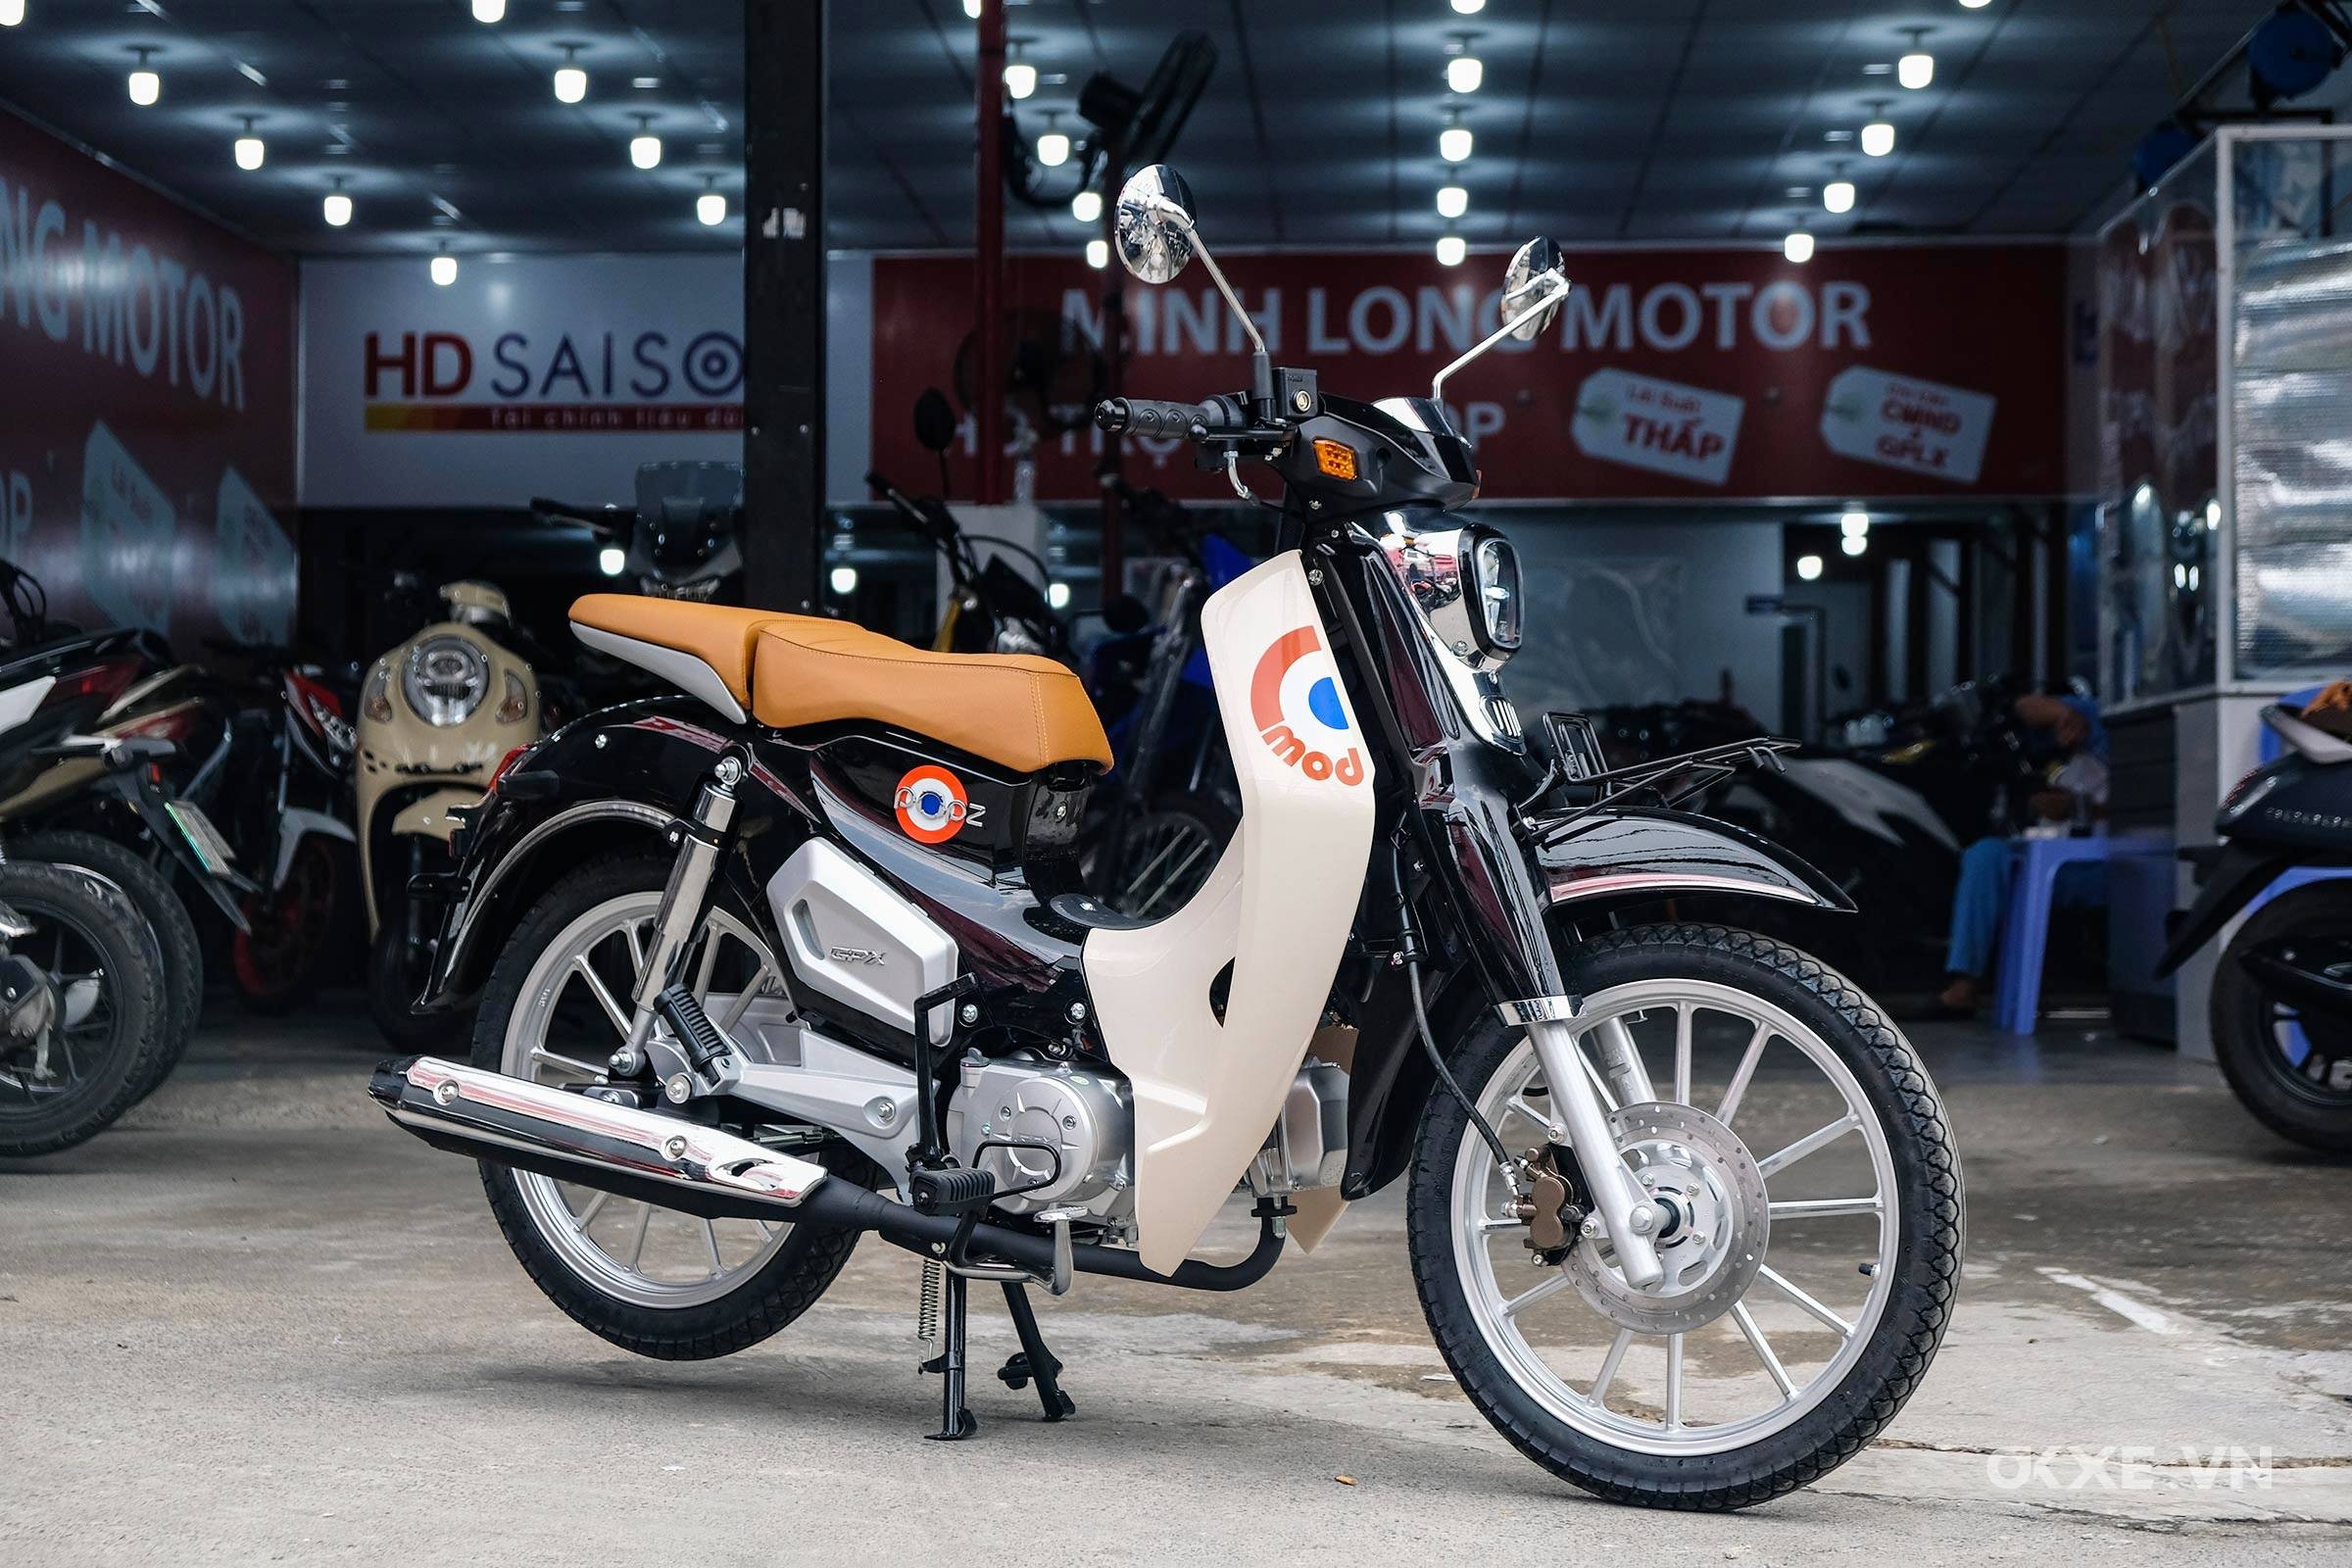 Honda Scoopy 2021 nhập Thái Lan ồ ạt về Việt Nam giá từ 74 triệu đồng